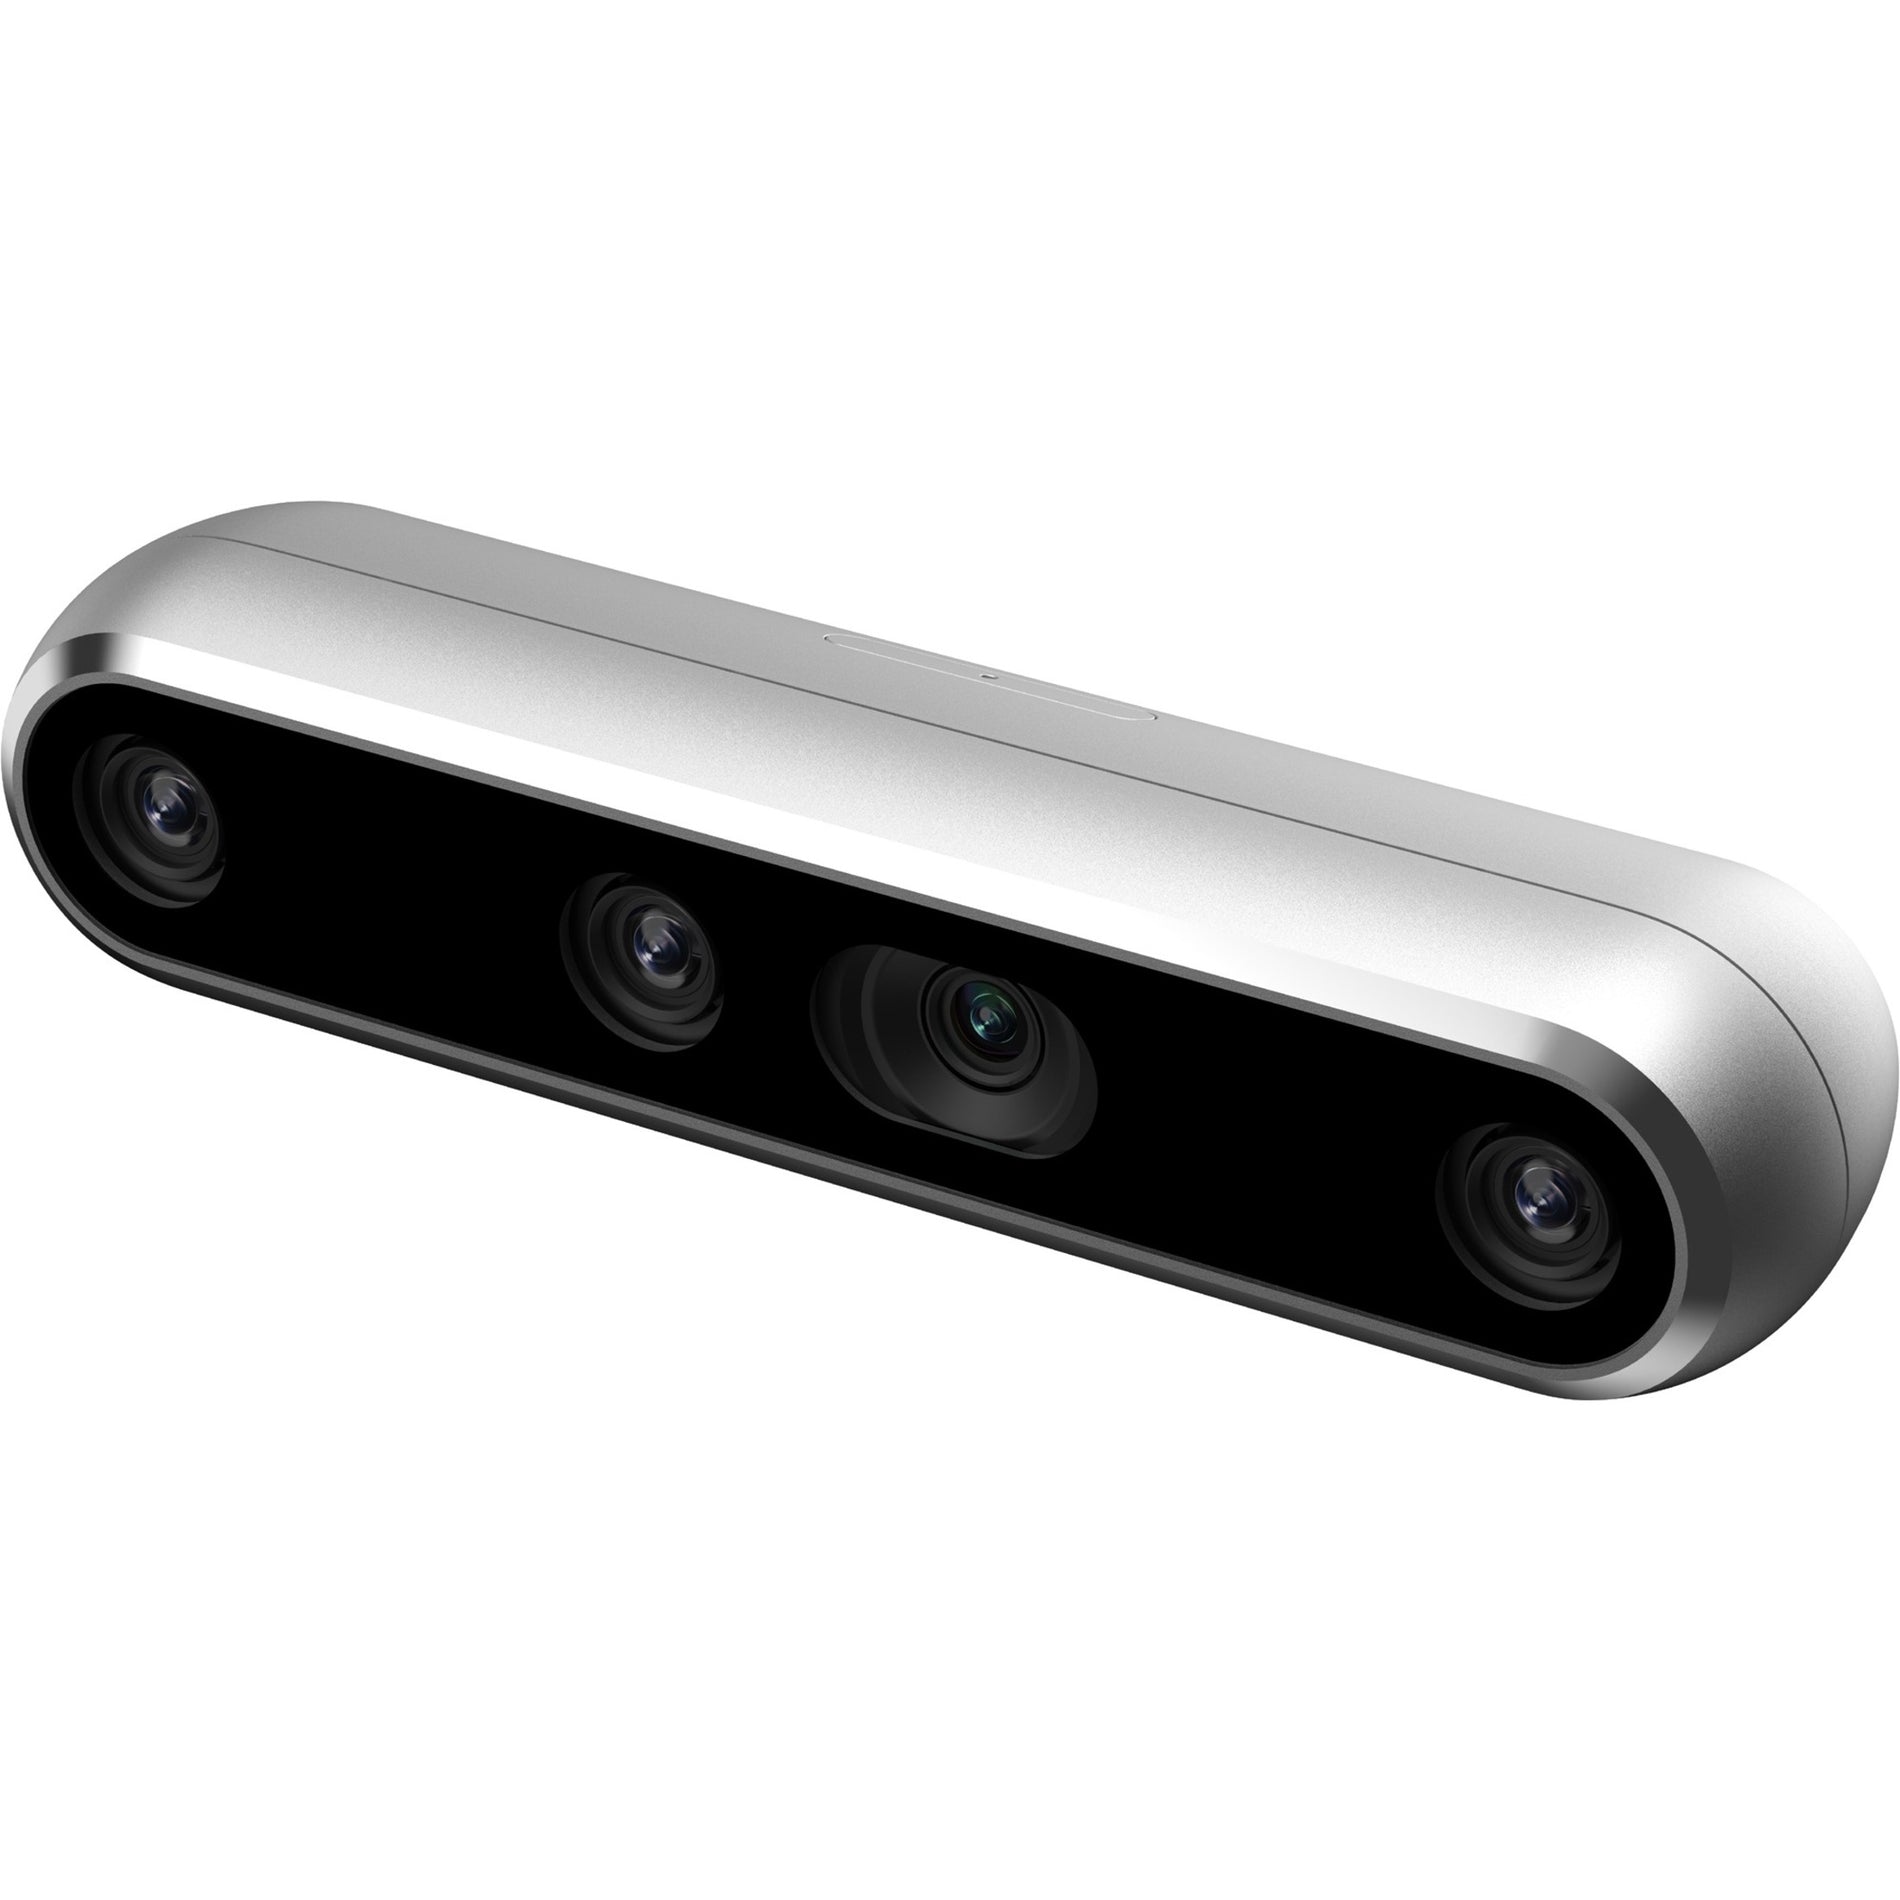 Intel 82635DSD455 RealSense Depth Camera D455, 90 fps USB 3.1 Webcam